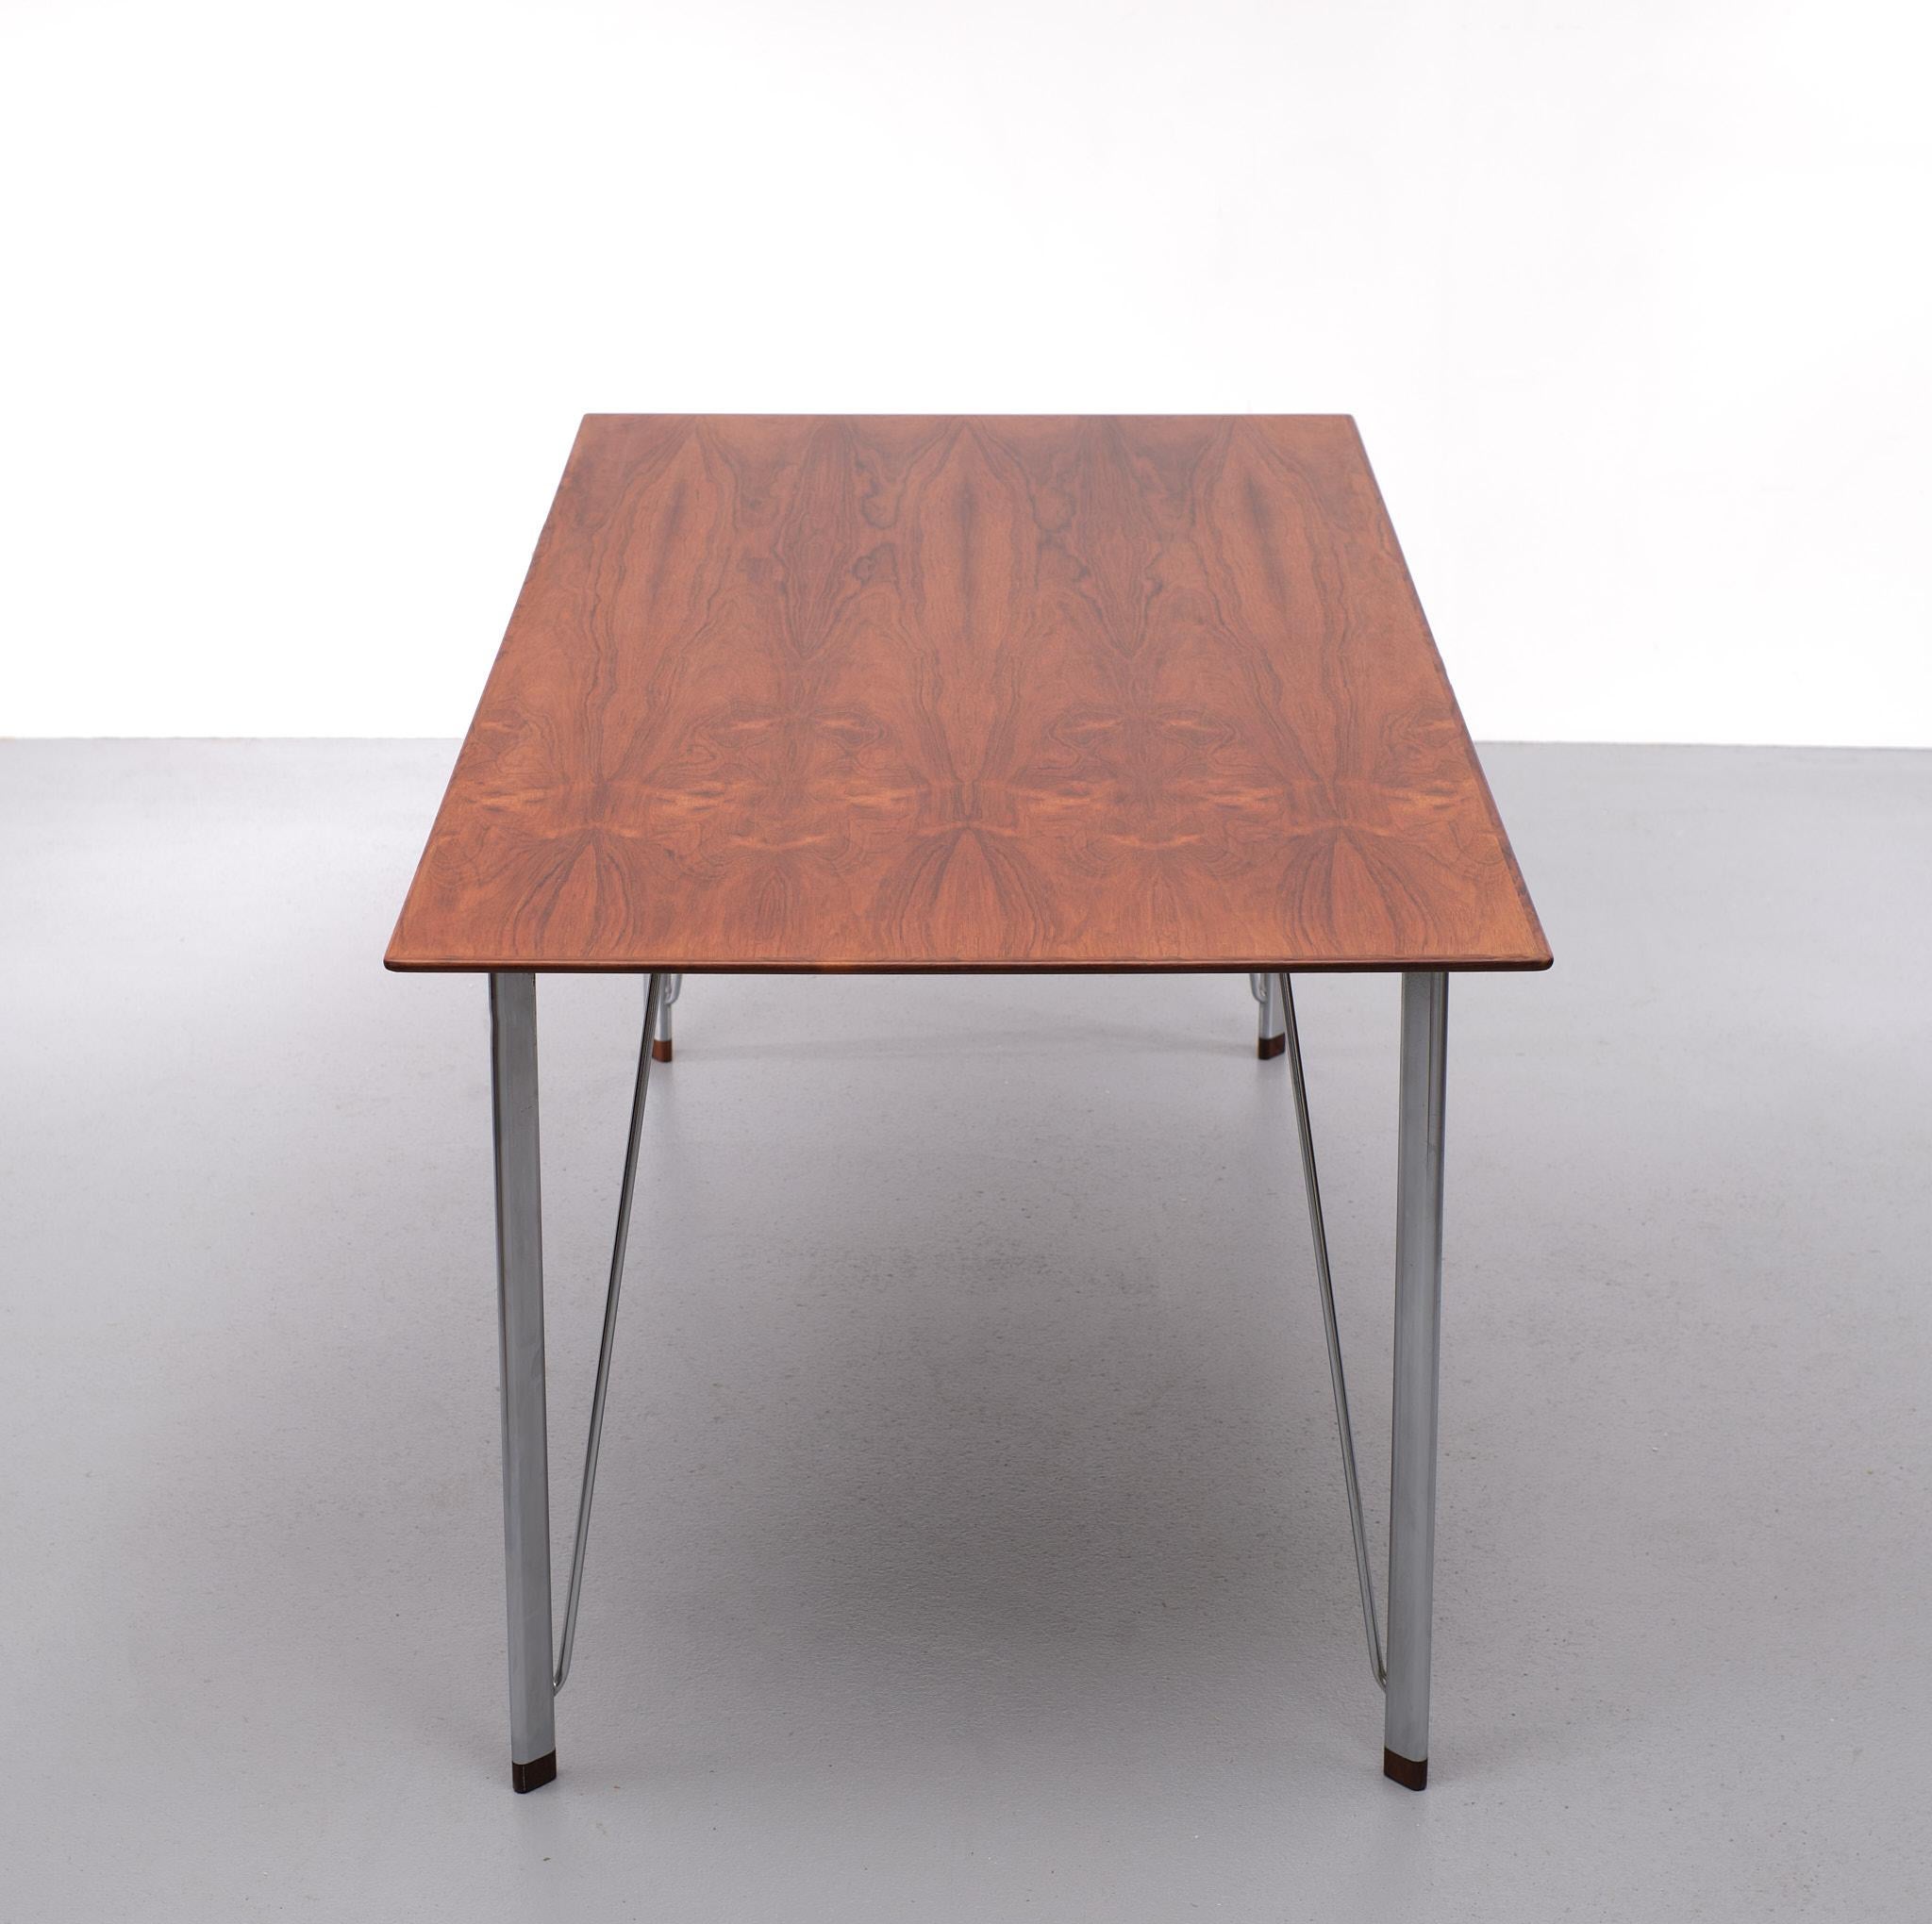 Arne Jacobsen Rosewood  writing  table  1950s  Denmark  1